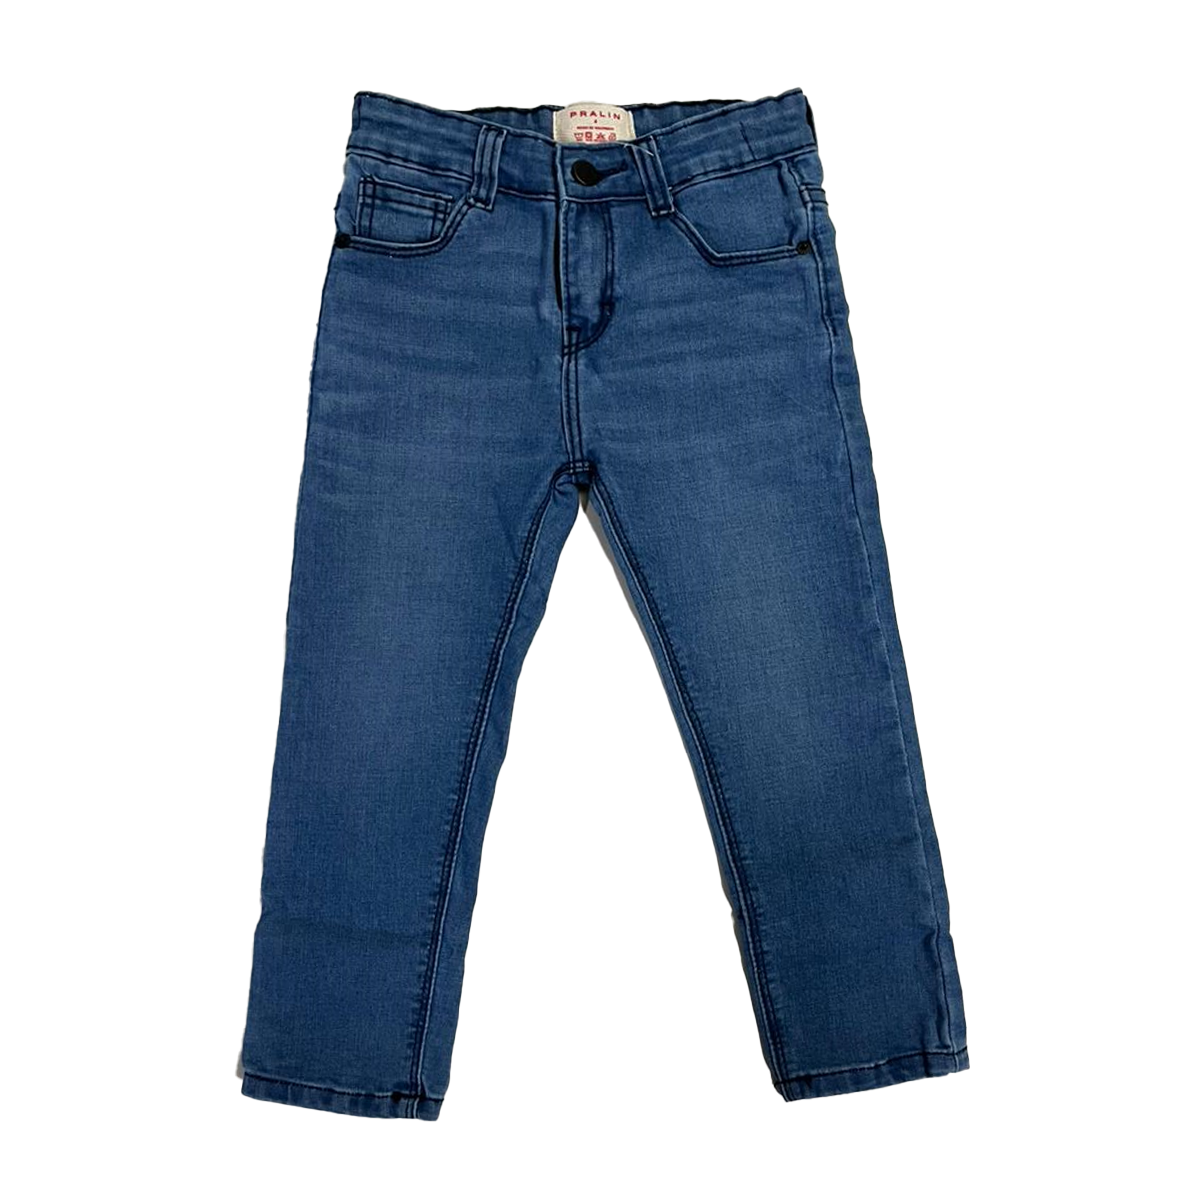 Jeans Azules Estilo Slim 10075 Unisex Niños